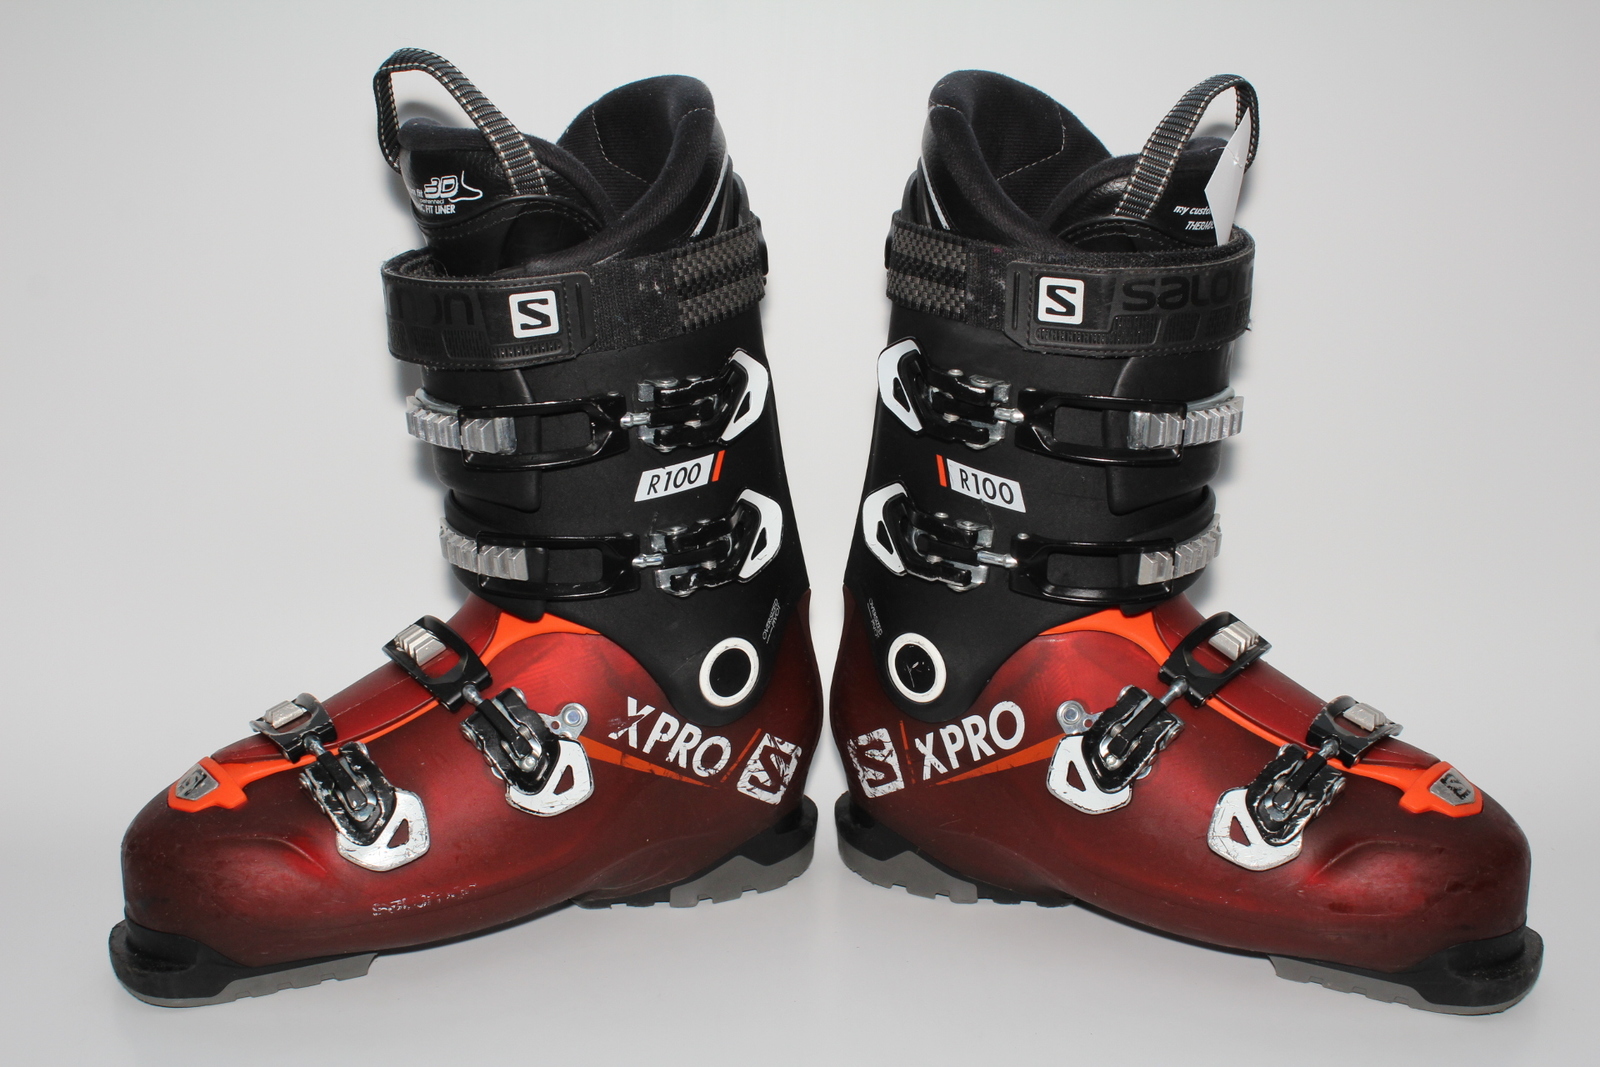 Lyžařské boty Salomon X Pro R100 vel. EU43.5 flexe 100